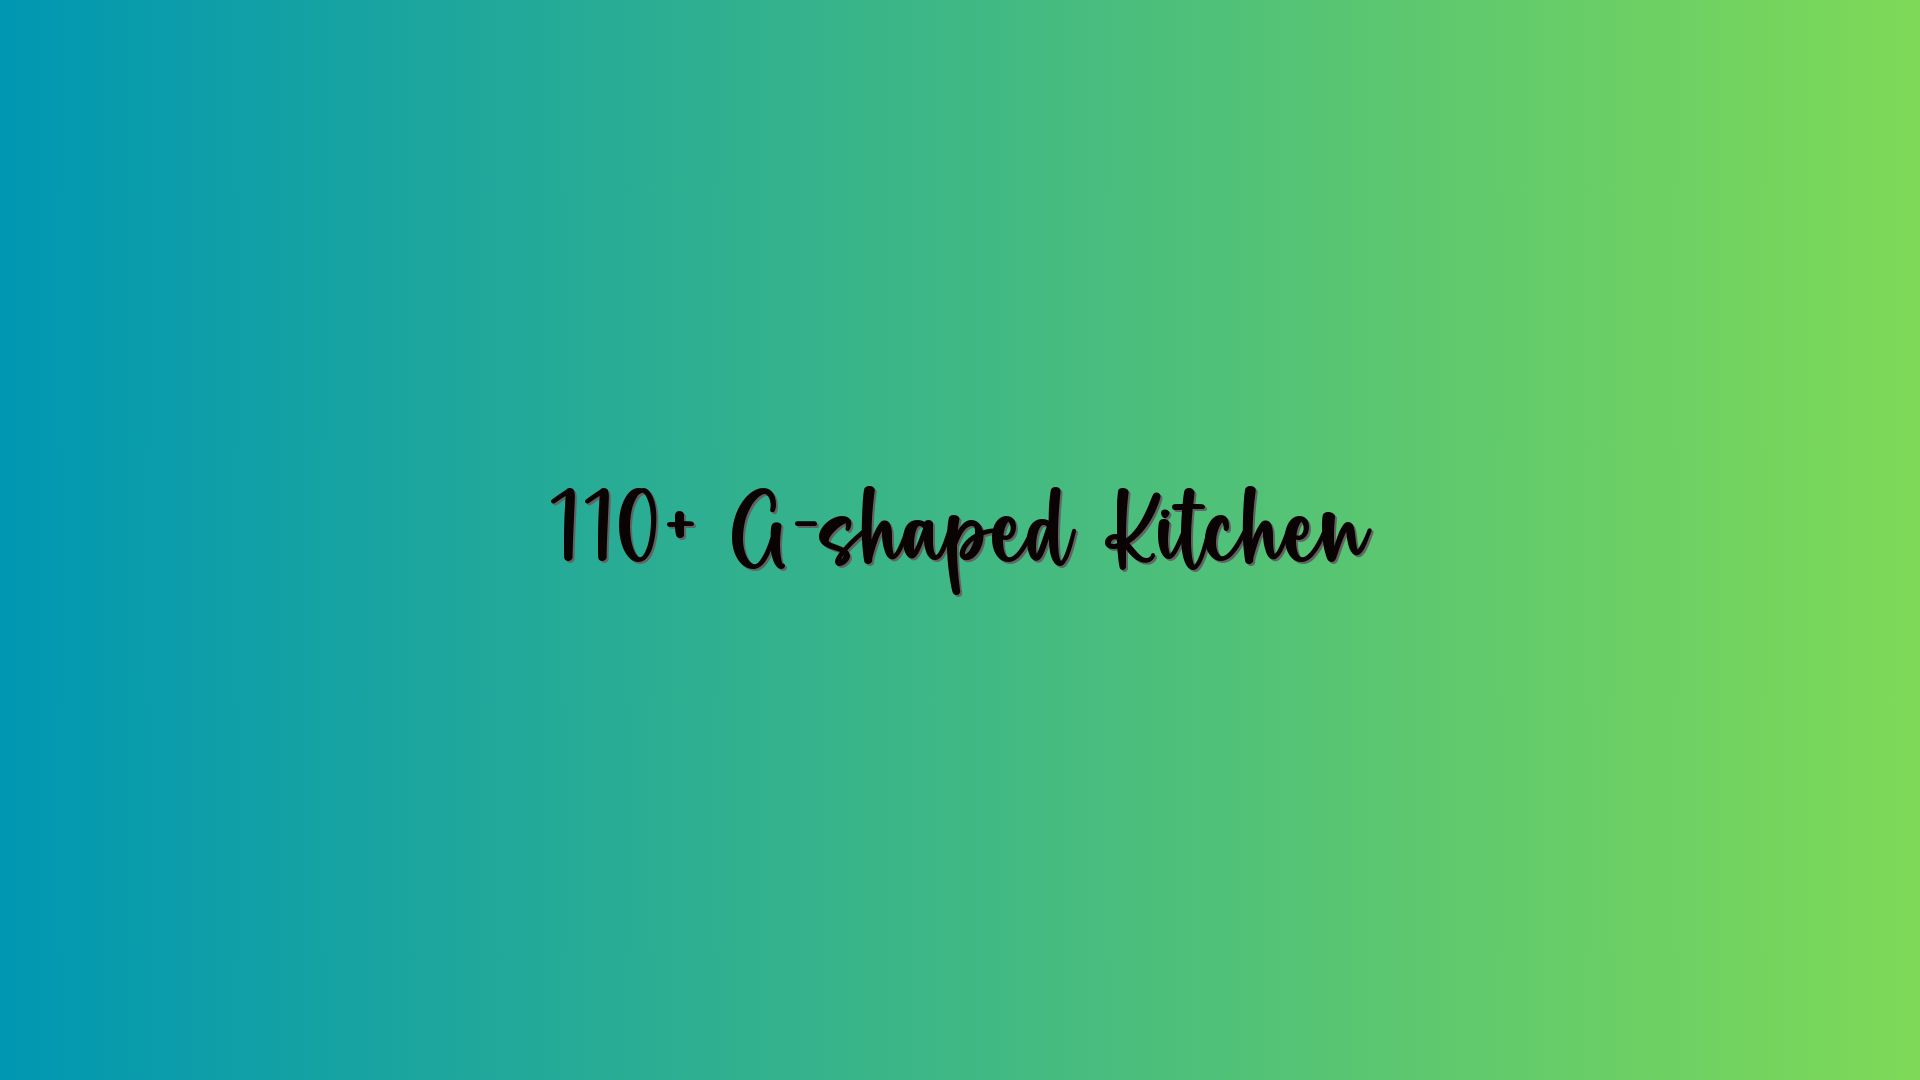 110+ G-shaped Kitchen